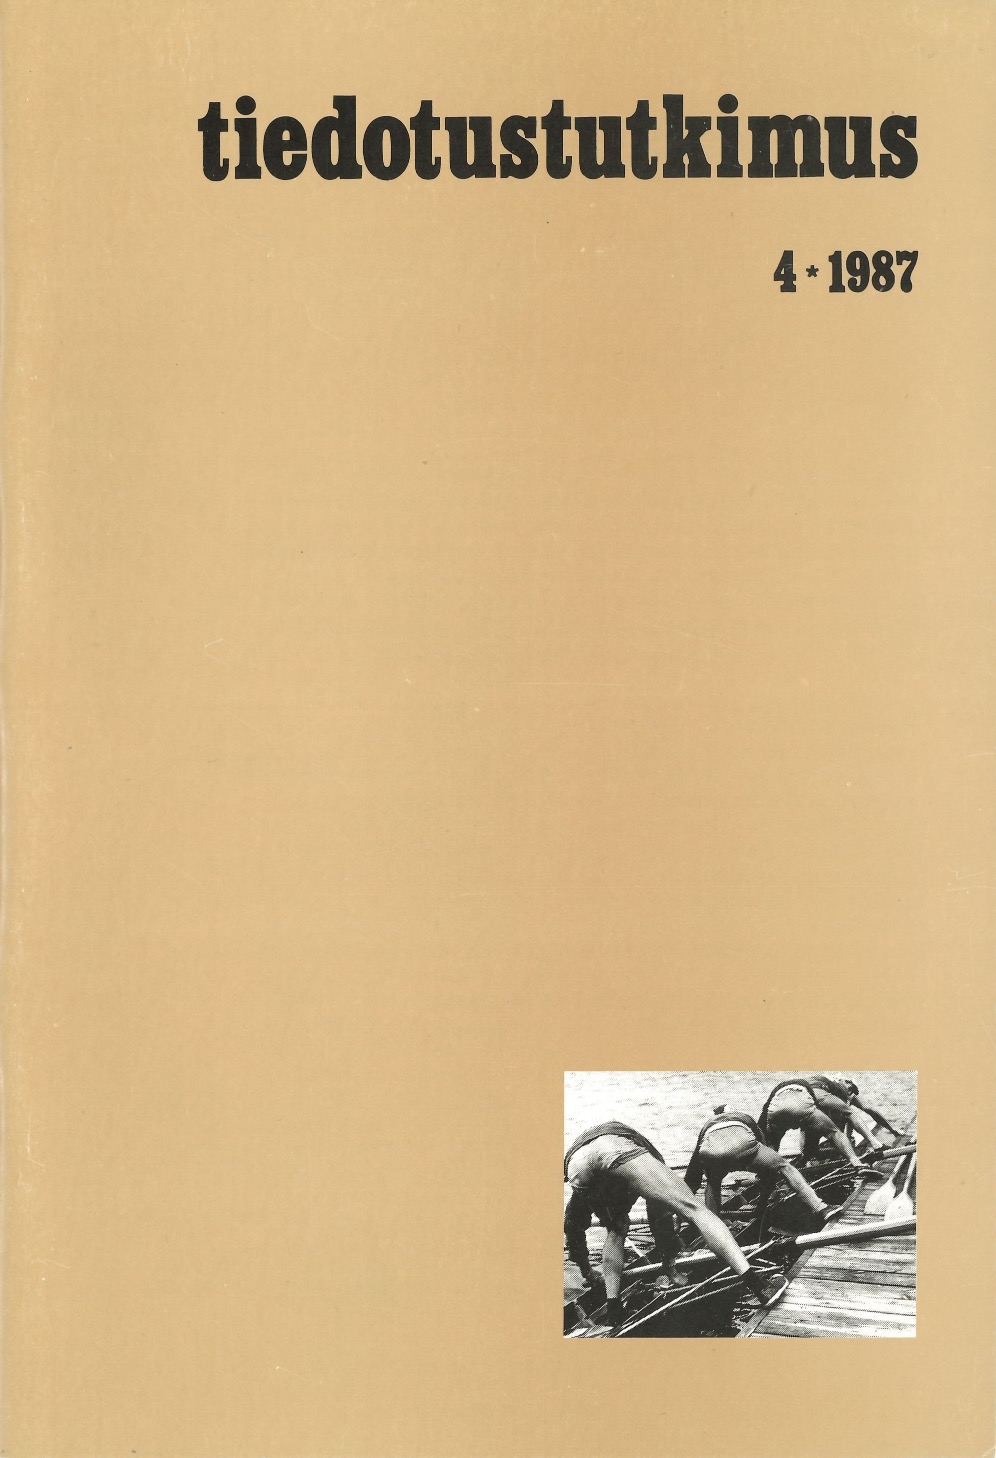 					Näytä Vol 10 Nro 4 (1987)
				